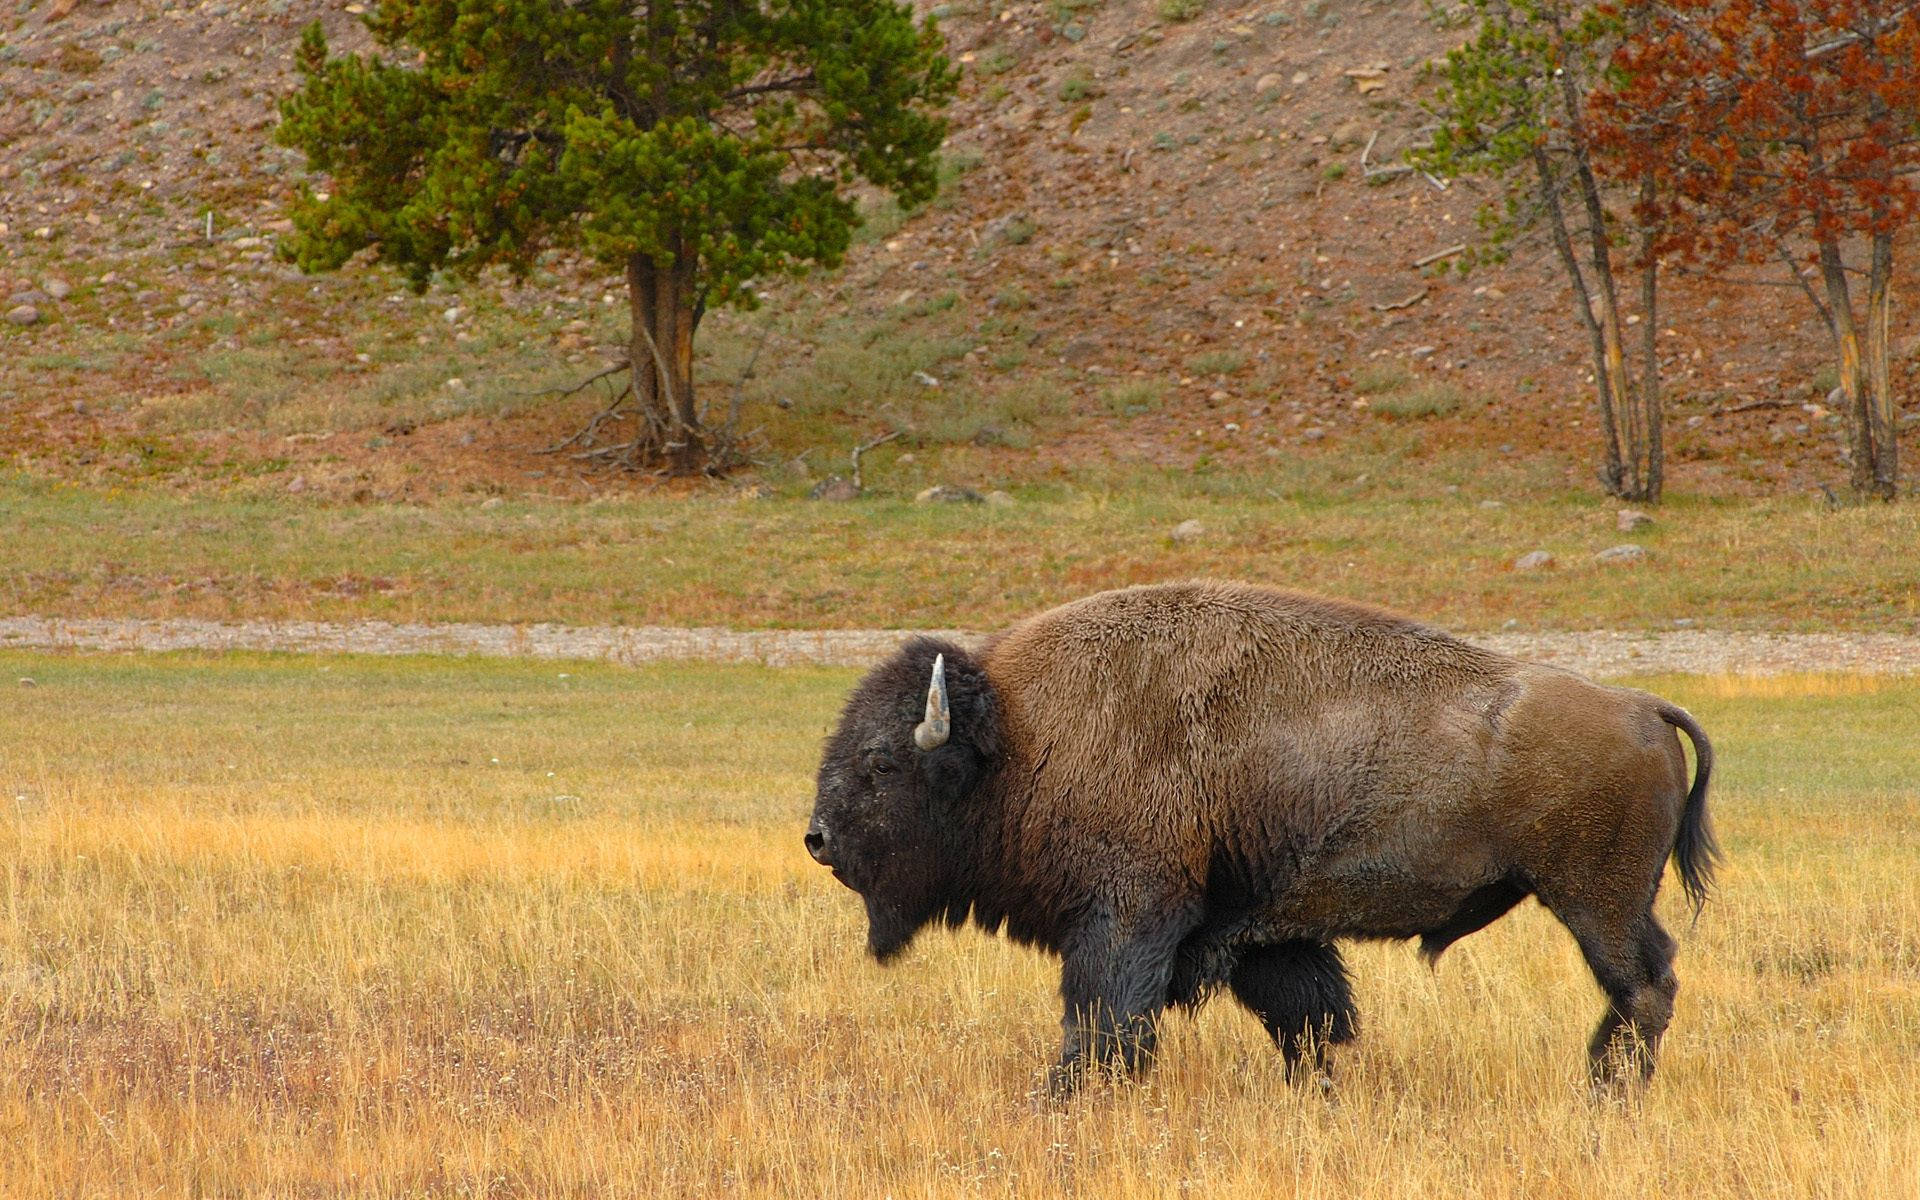 Walking Odd-looking Buffalo